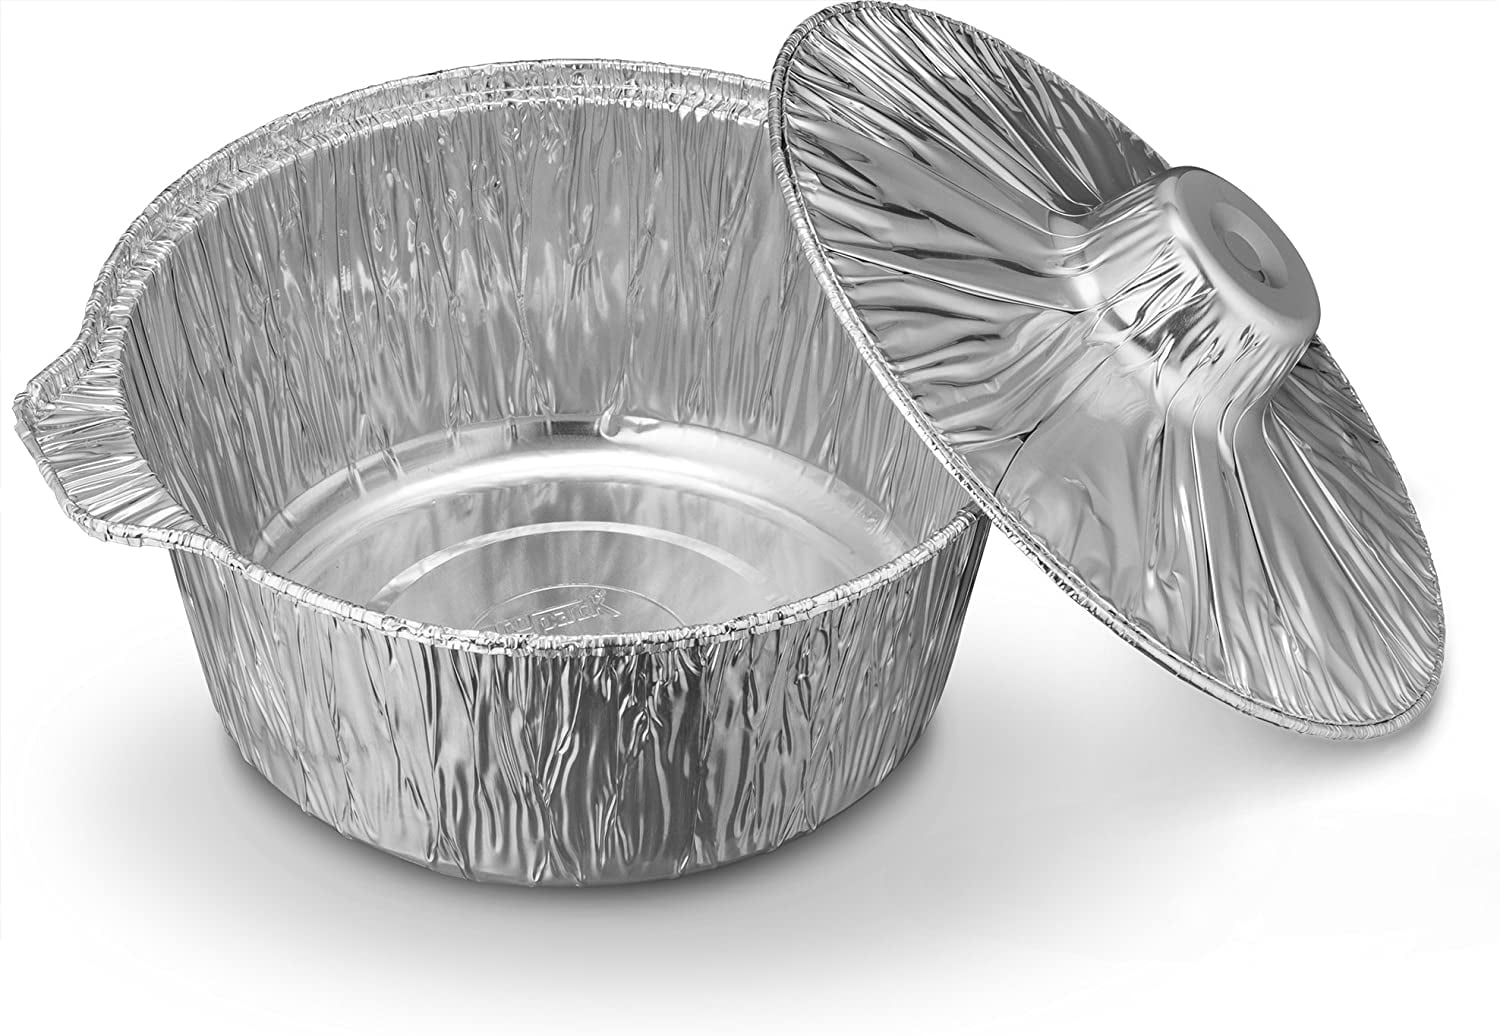 Smilamo Disposable Aluminum Pots with Lids, Aluminum Round Foil Pan with Lids, Disposable Pots, 8 * 3inch Baking Foil Pan Tinfoil Camping Pot for